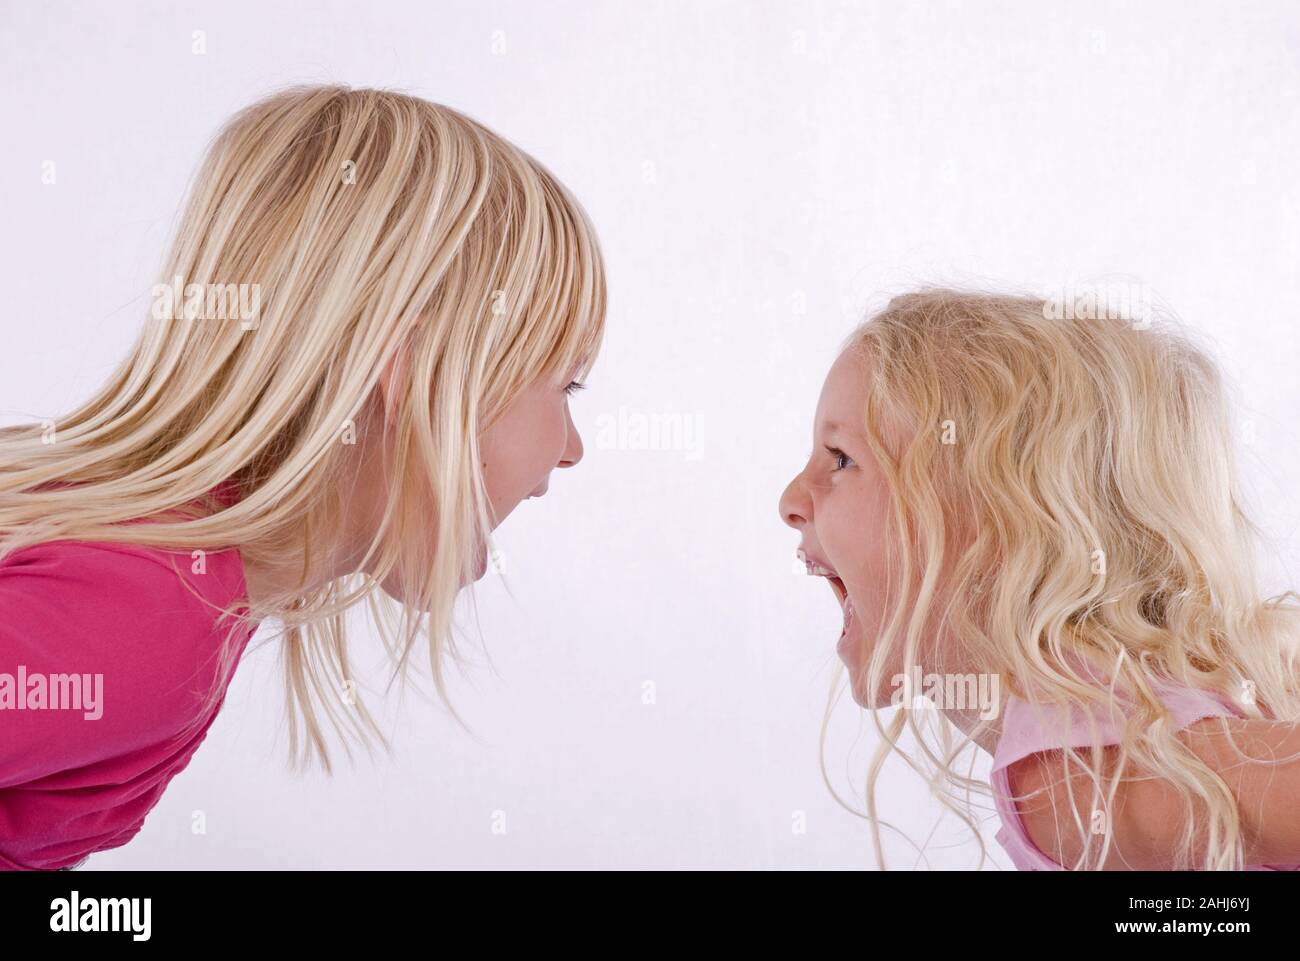 Zwei blonde Mädchen, 6 und Jahre alt, Schulmädchen, schreien sich an, MR:Yes Stock Photo